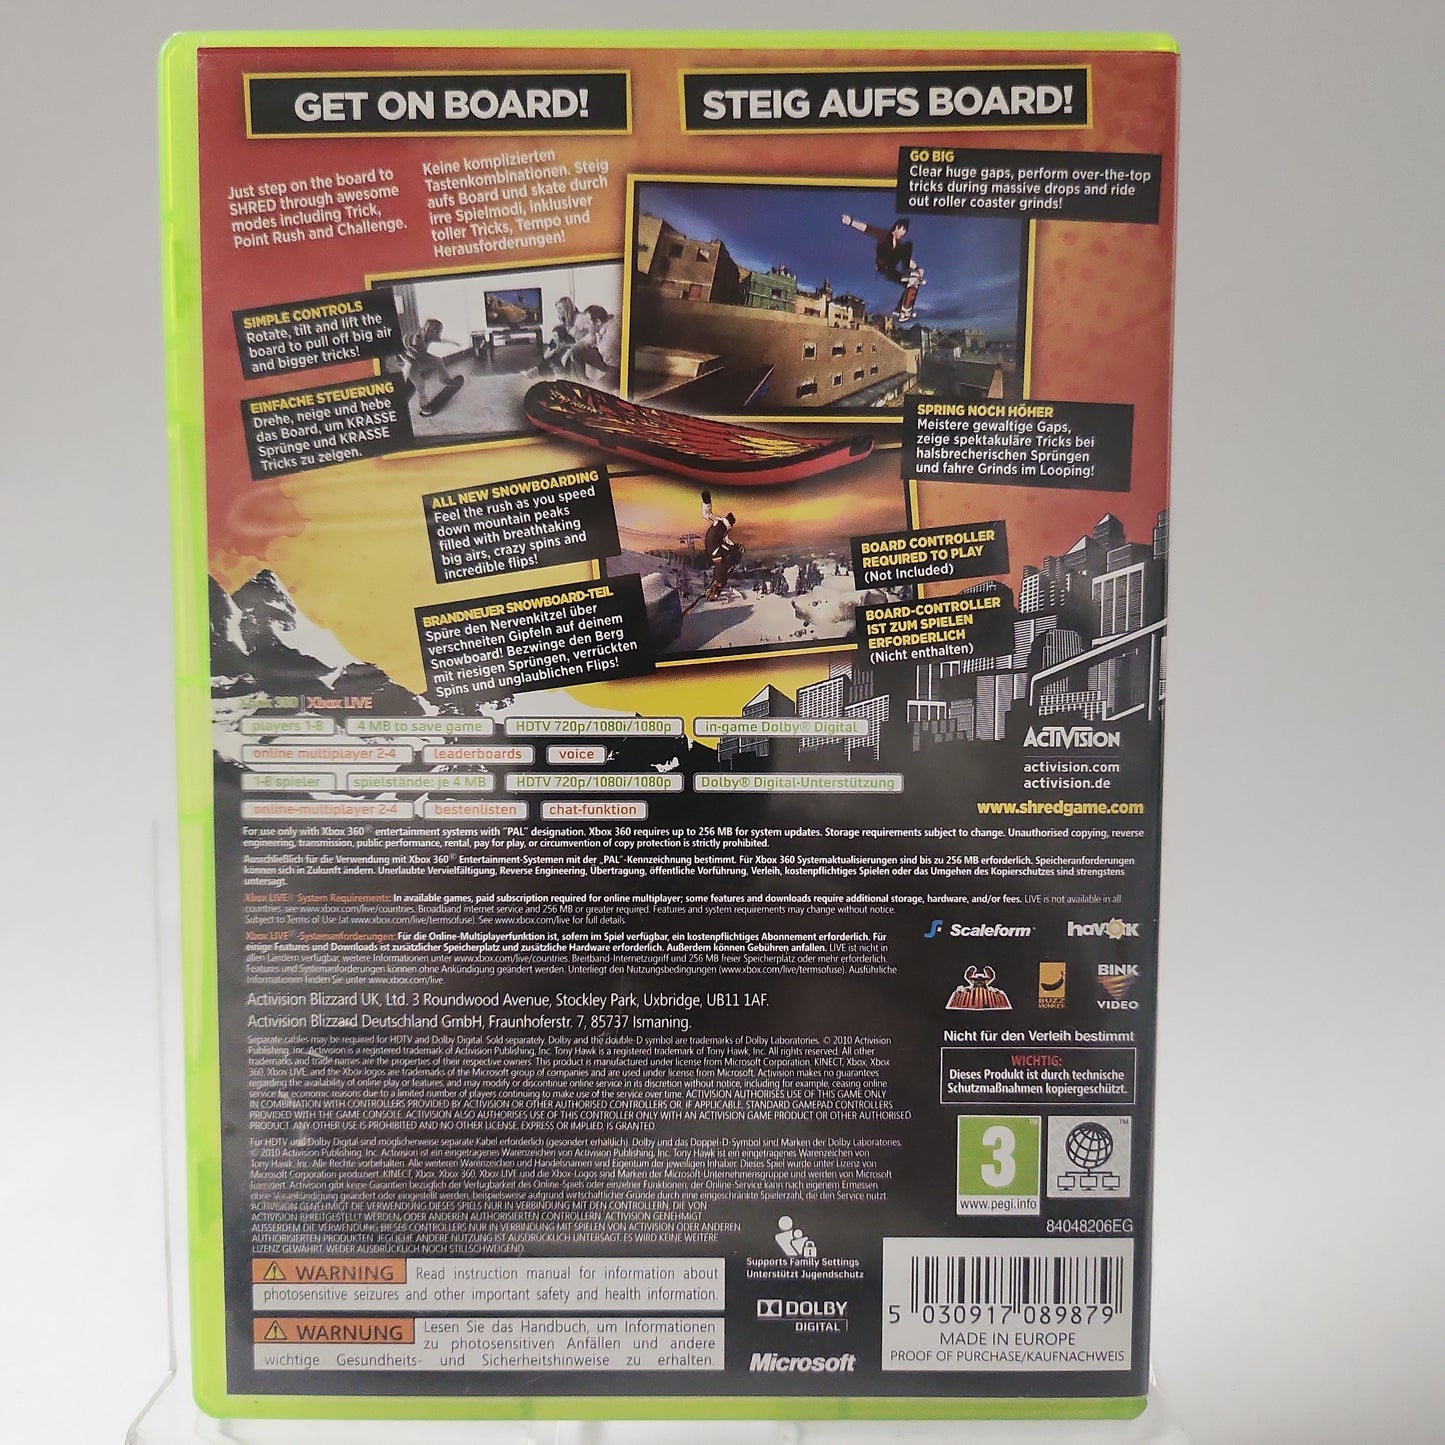 Tony Hawk's Shred Xbox 360